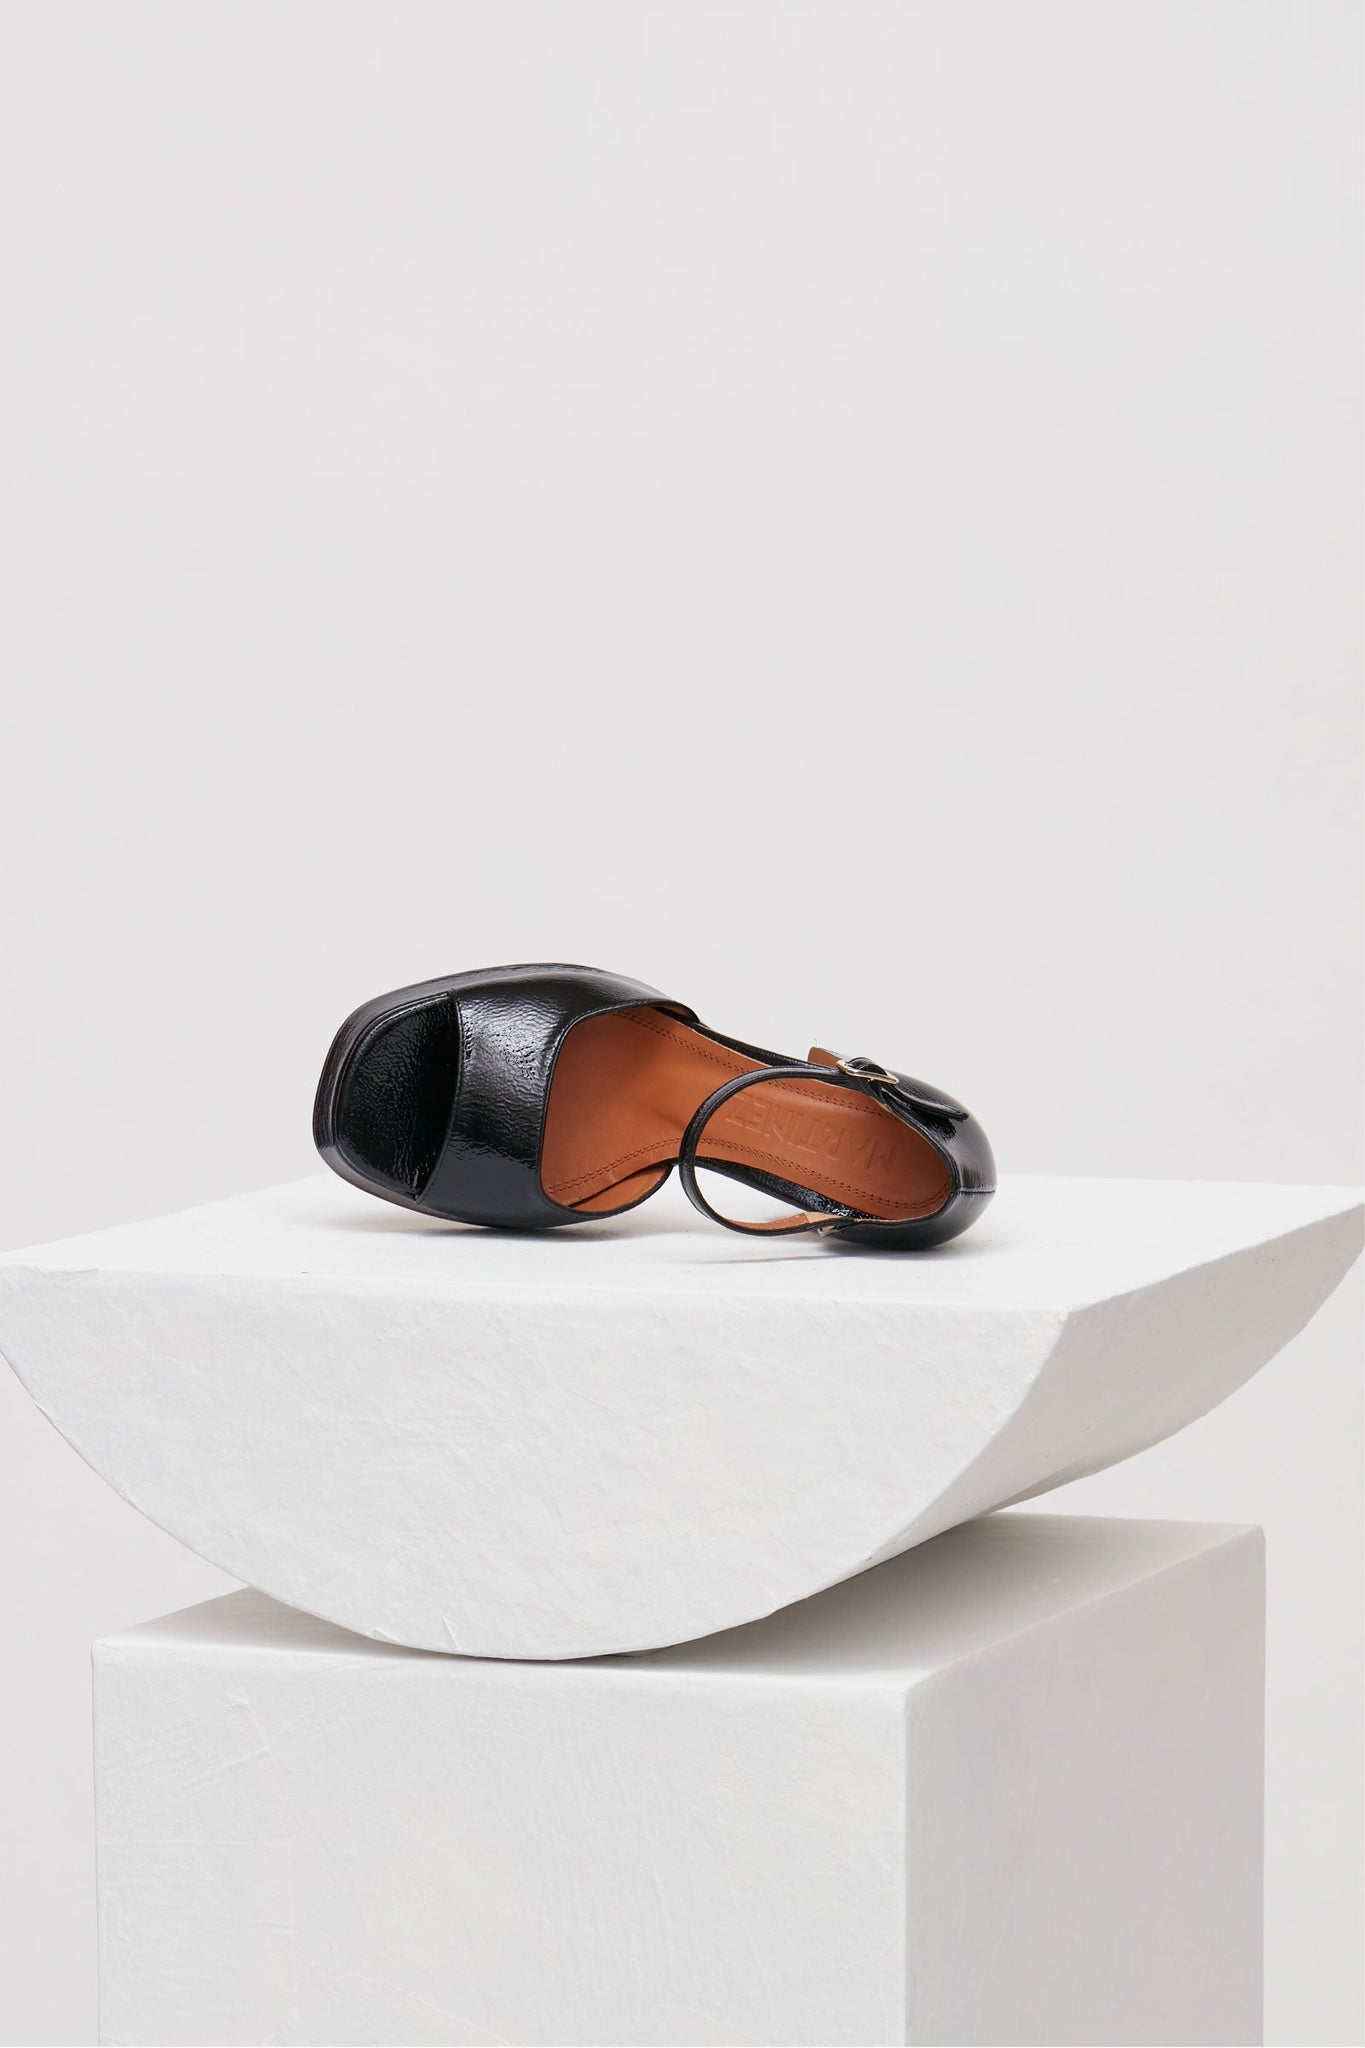 Souliers Martinez Shoes MARFA - Black Patent Leather Platform Sandals 